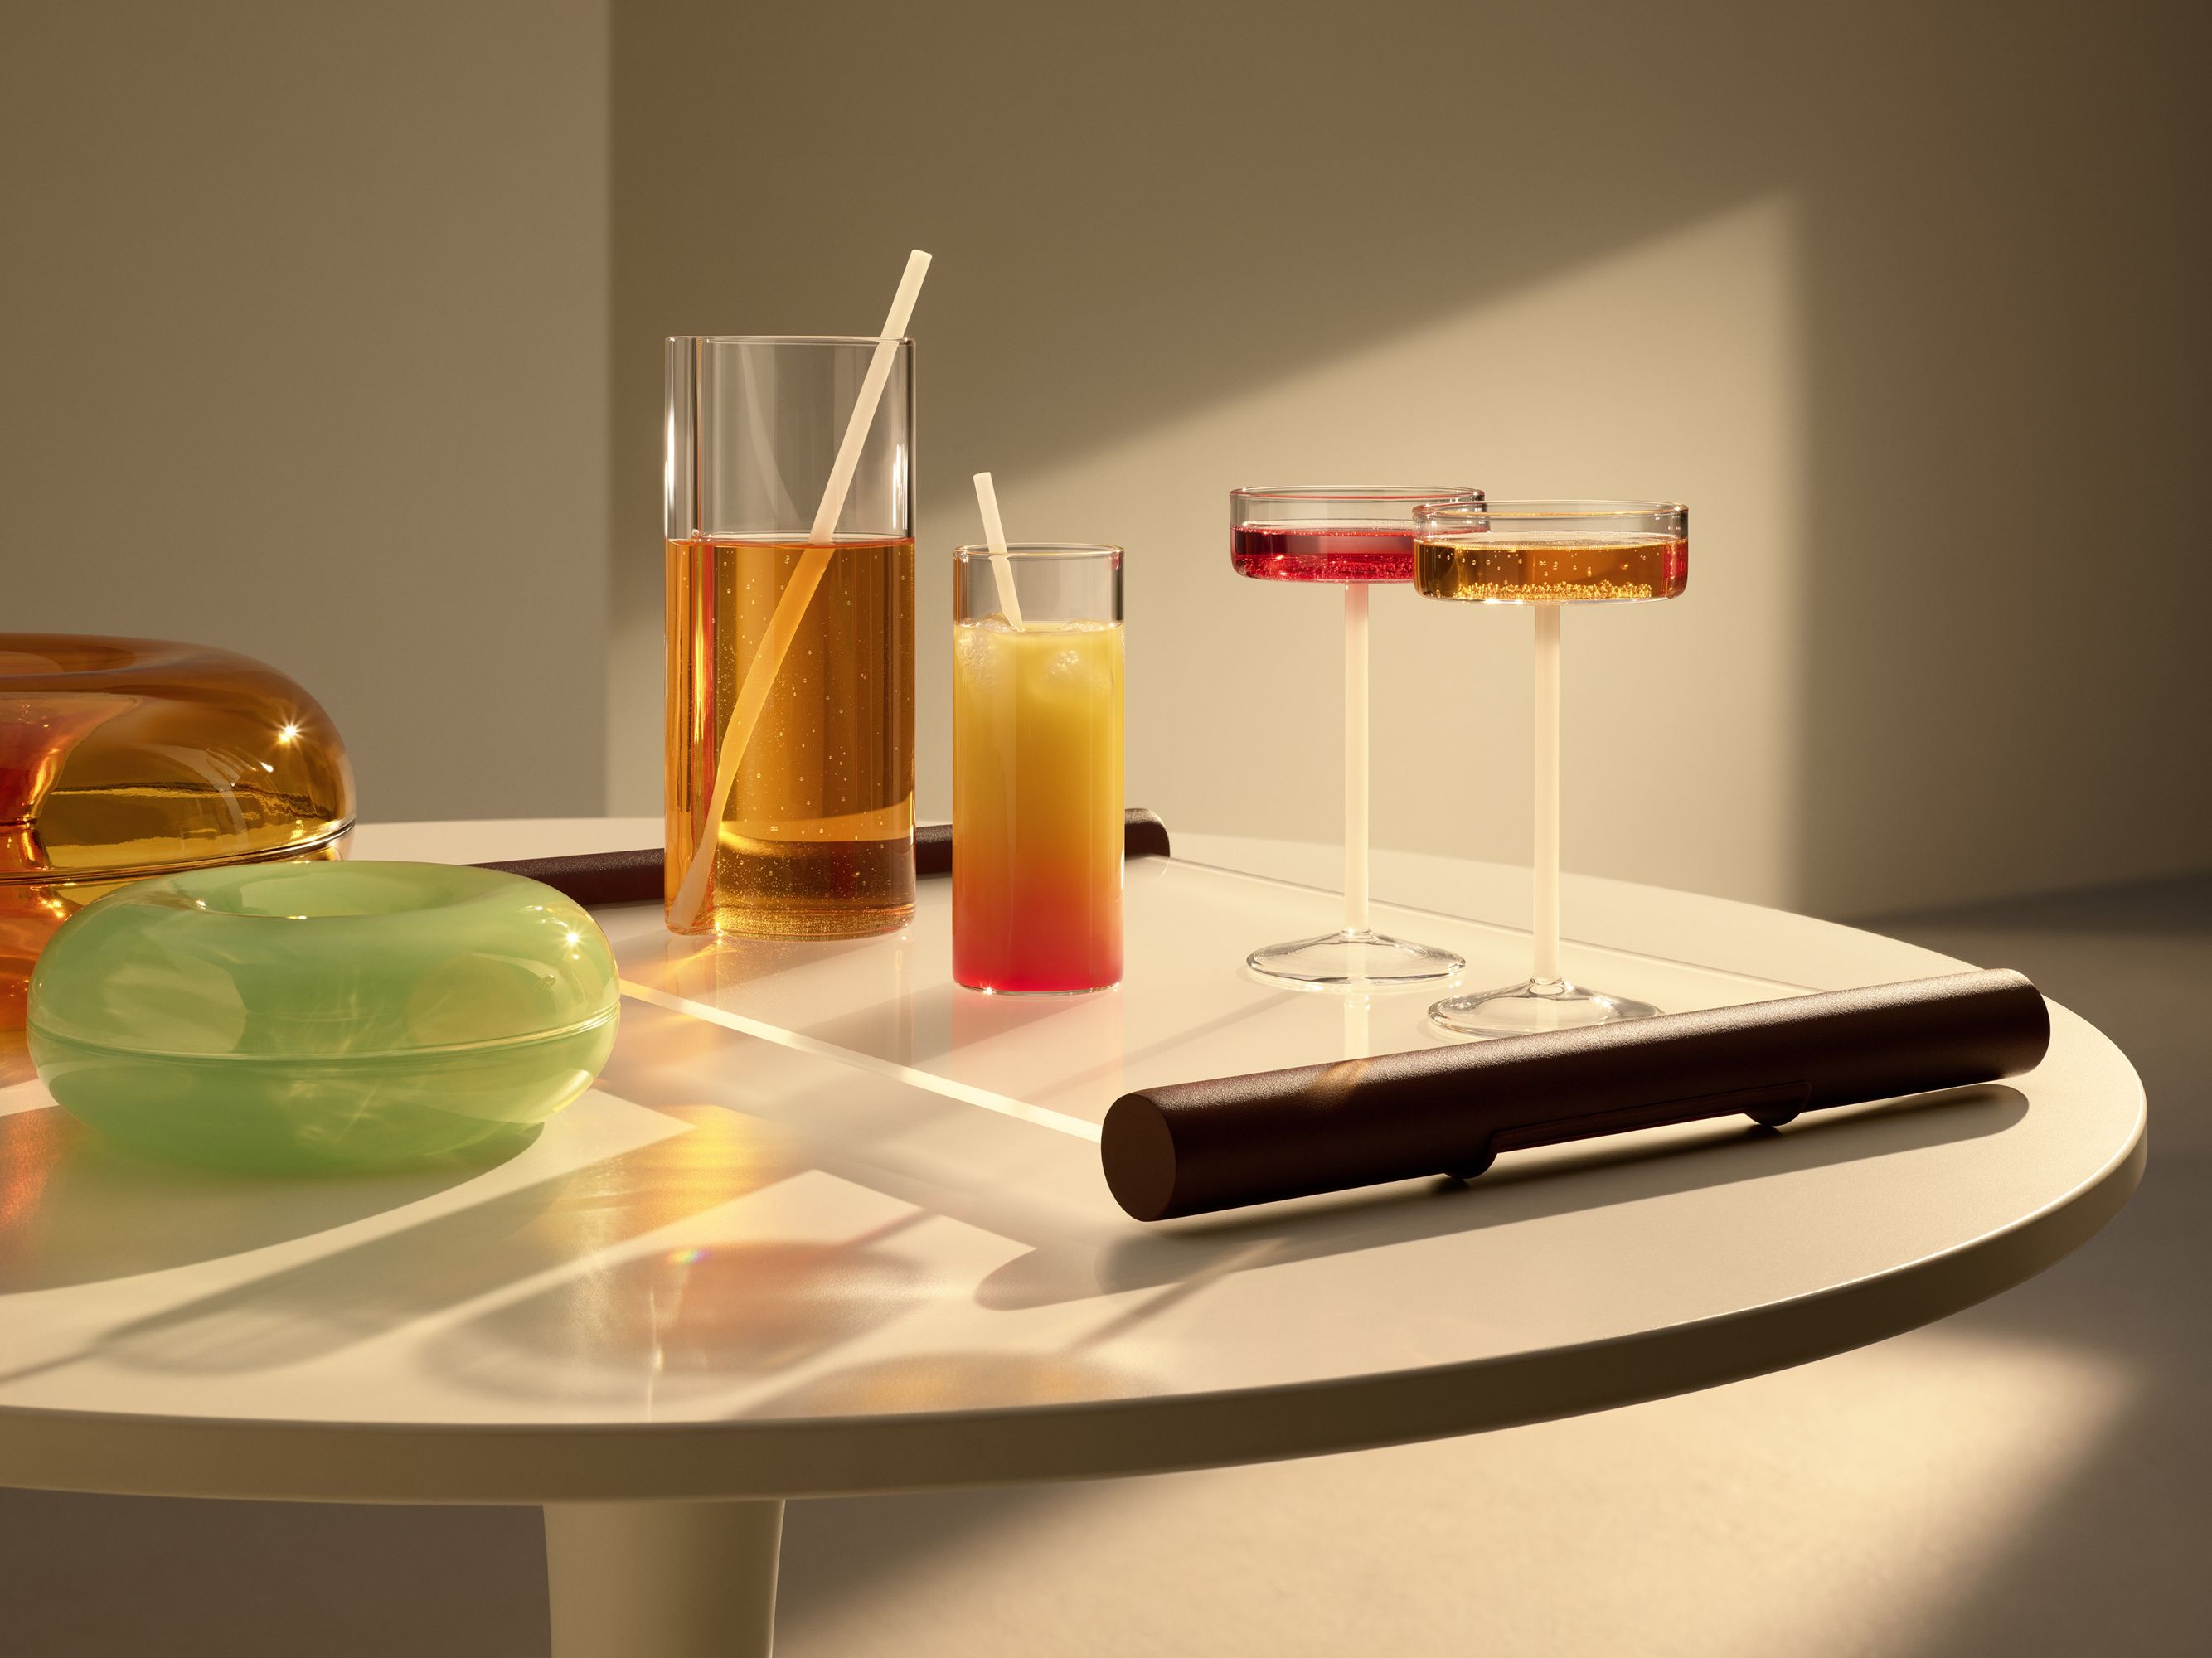 Más moderno imposible: Ikea trae una nueva lámpara para la mesa de